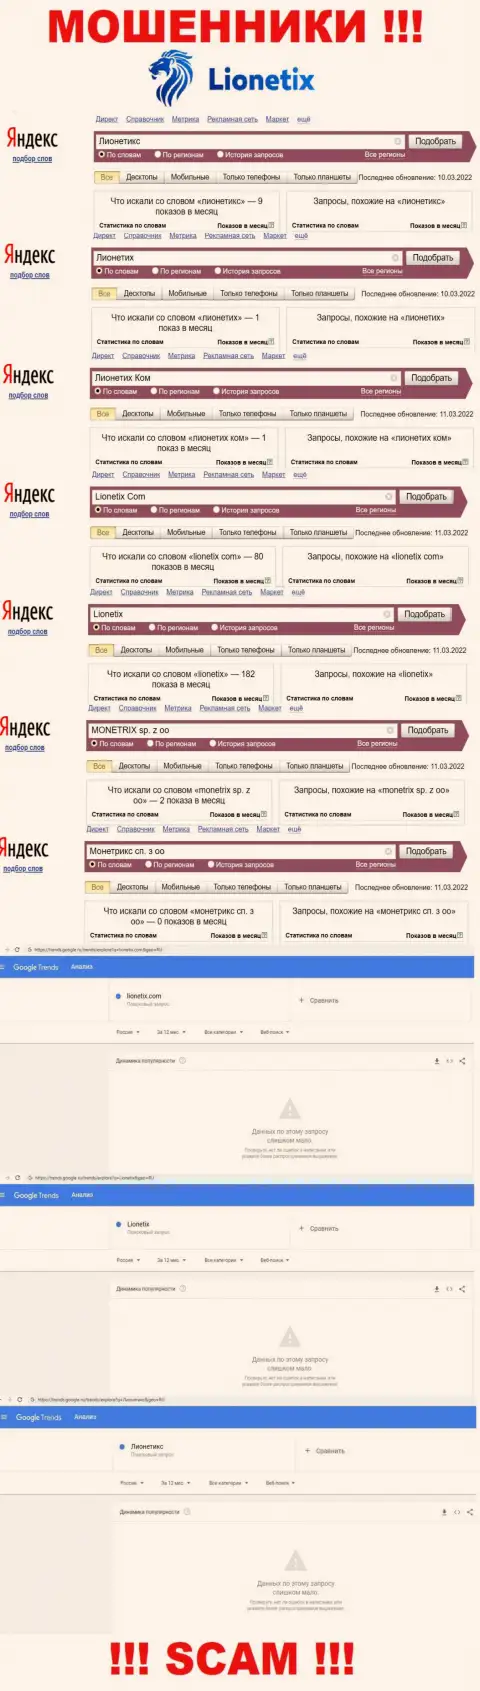 Вот такое количество поисковых запросов в интернете по мошенникам Лионетикс Ком